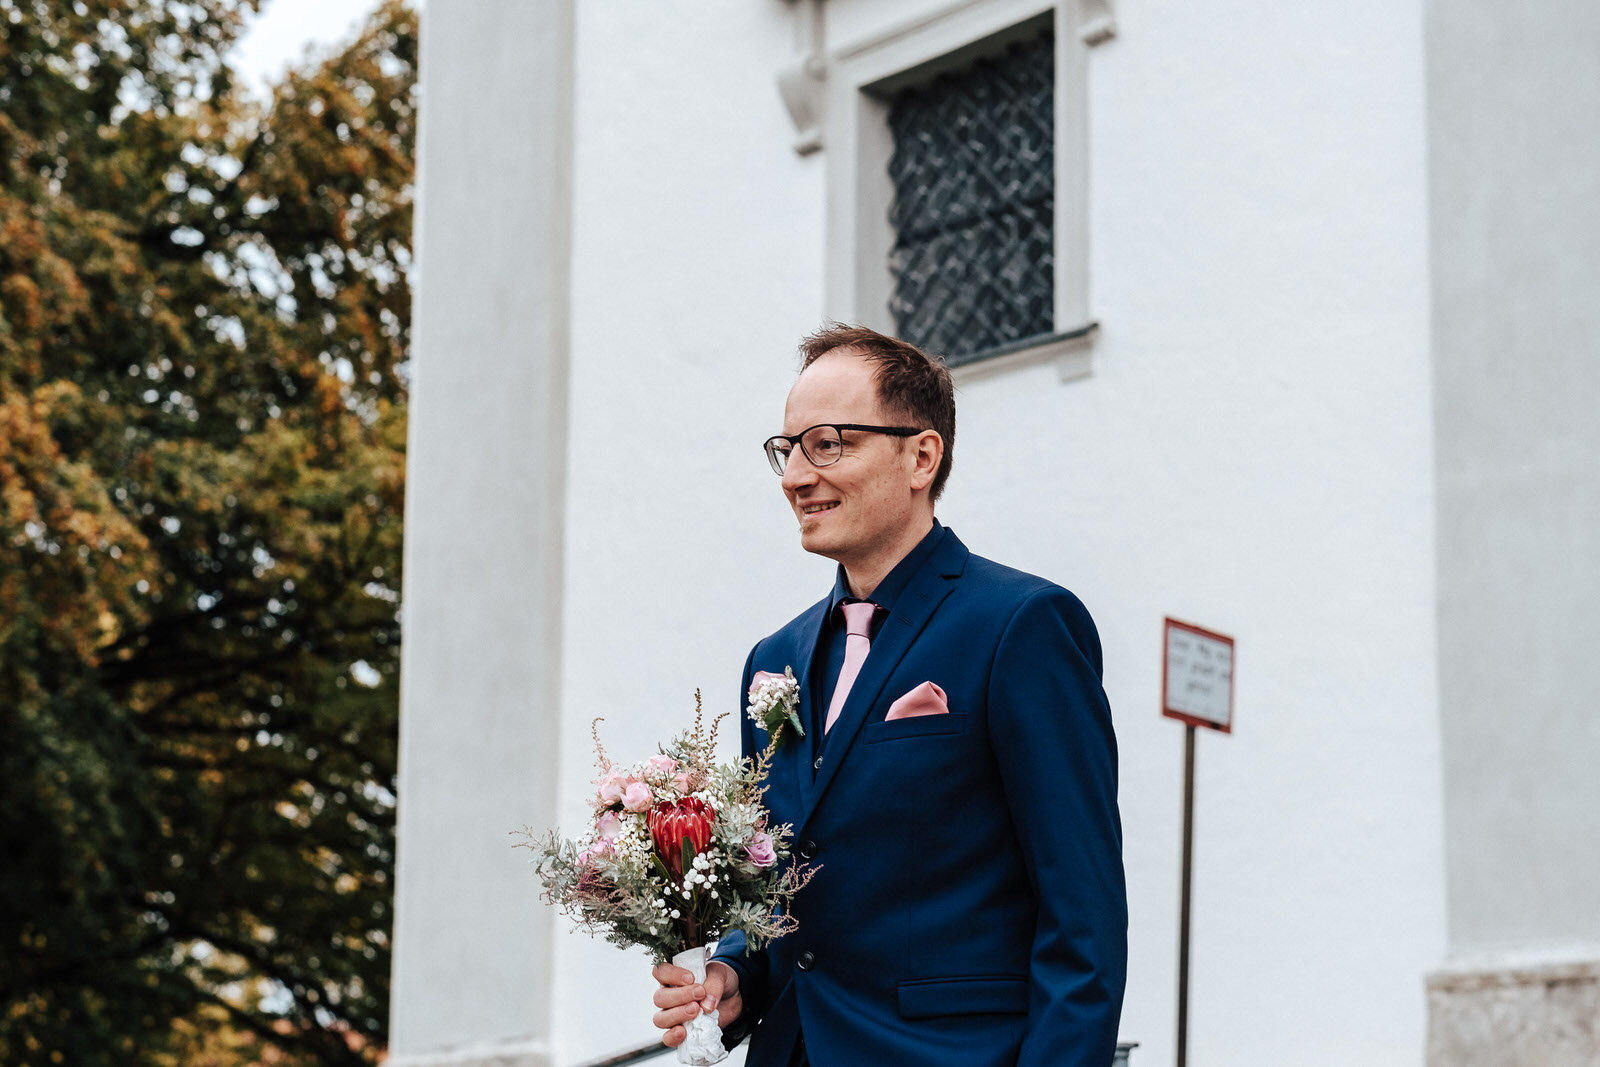 Florian-Rieder-Fotografie-Kempten-Hochzeit-Lara-Stephan-39.jpg